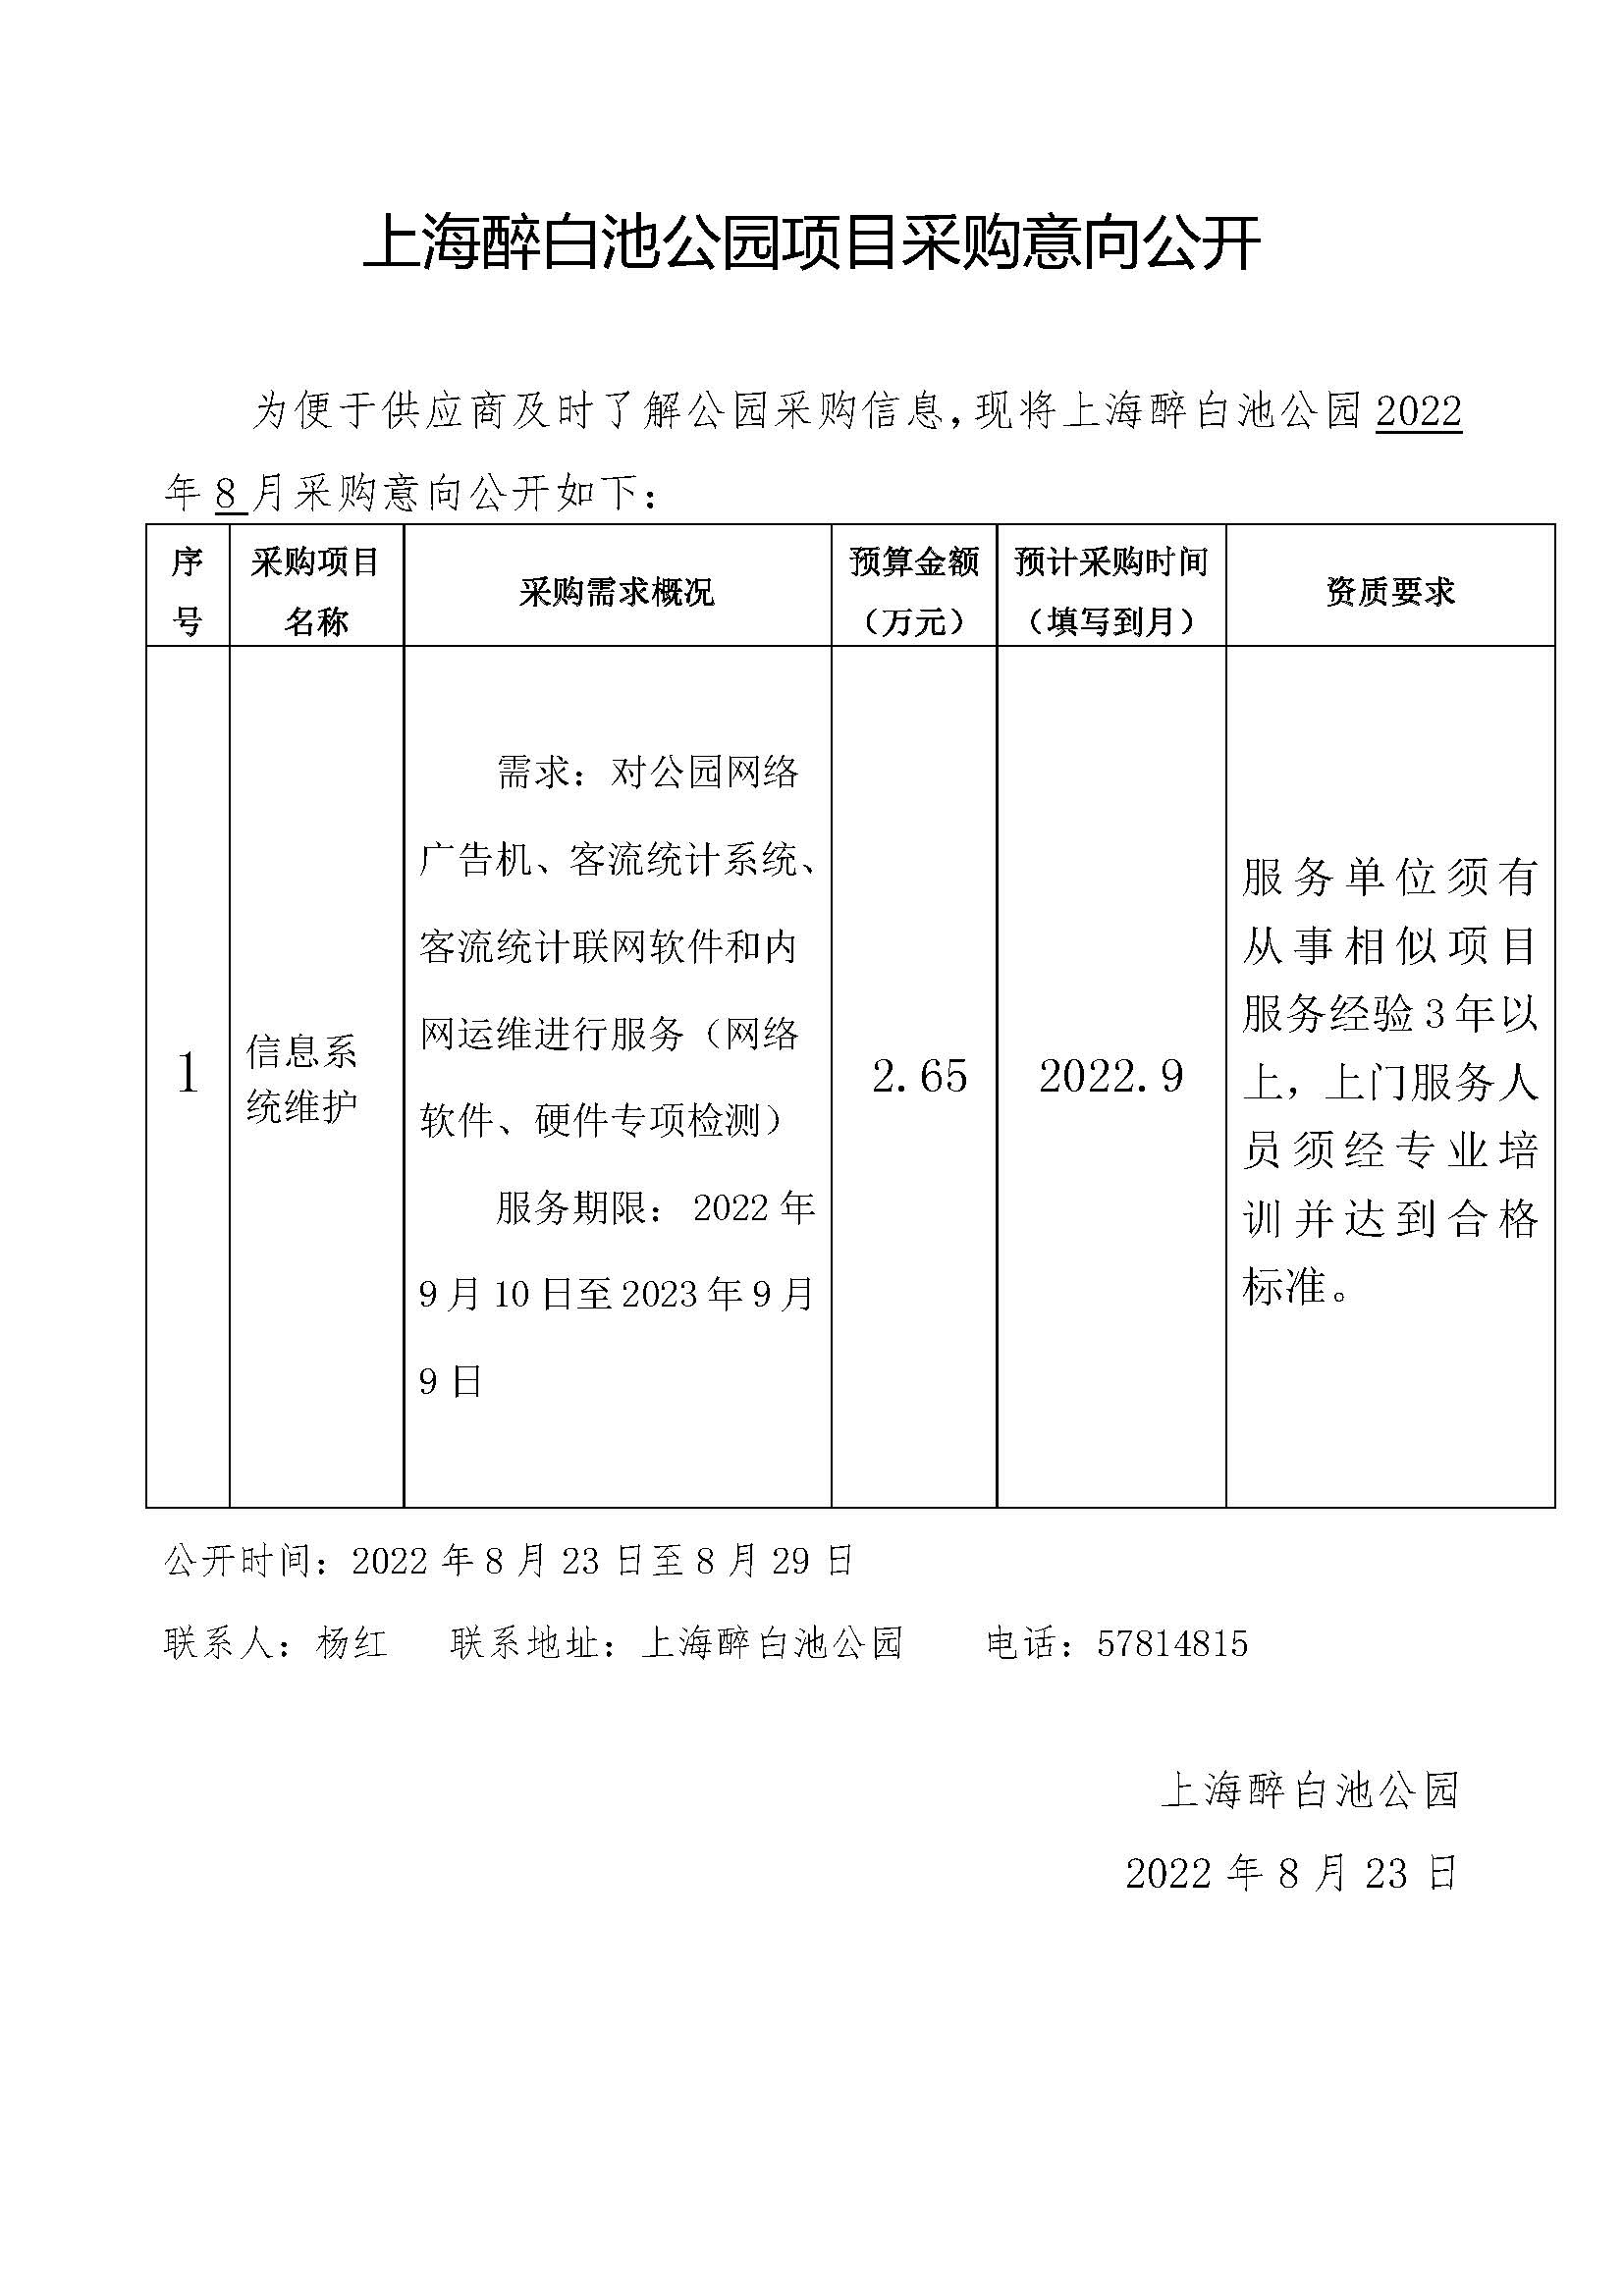 2022.8上海醉白池公园项目采购意向（信息系统维护）.jpg